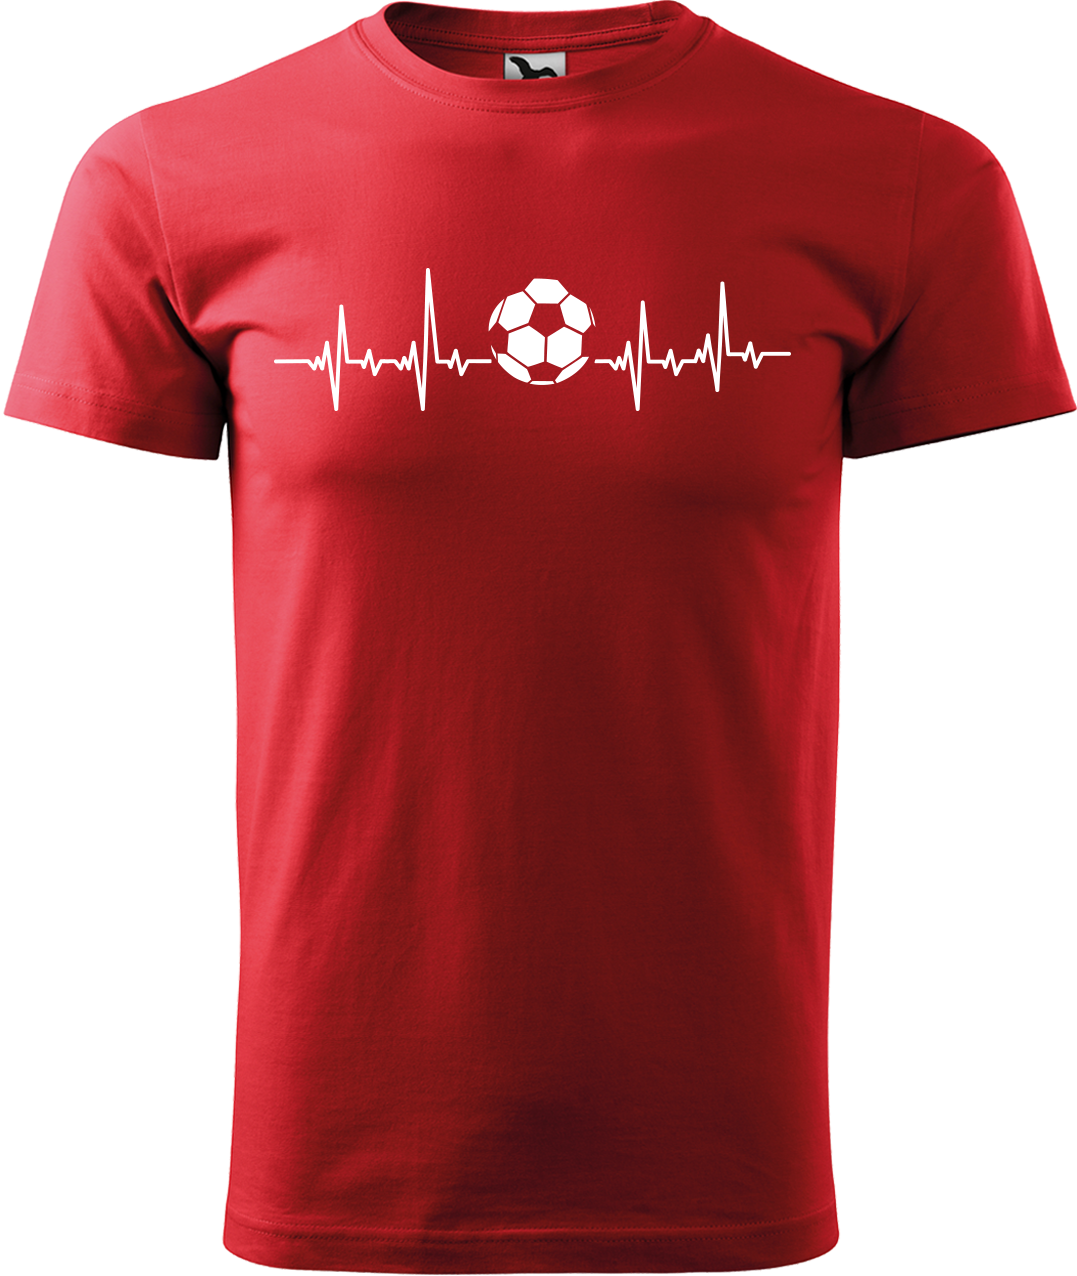 Tričko pro fotbalistu - Fotbalistův kardiogram Velikost: 4XL, Barva: Červená (07)